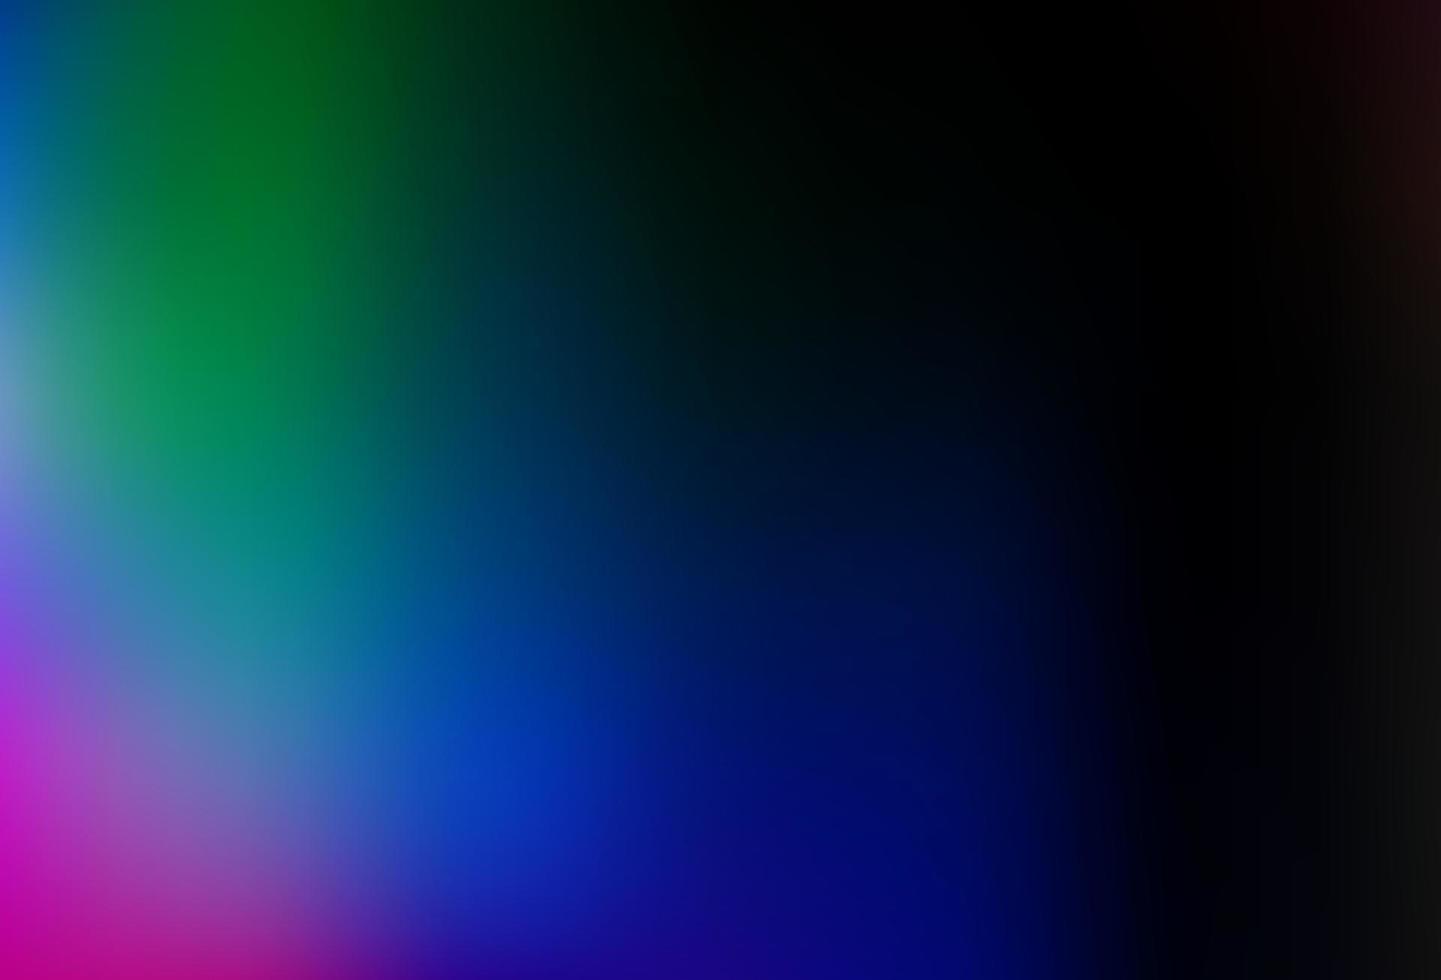 donkere veelkleurige, regenboog vector abstracte wazig sjabloon.